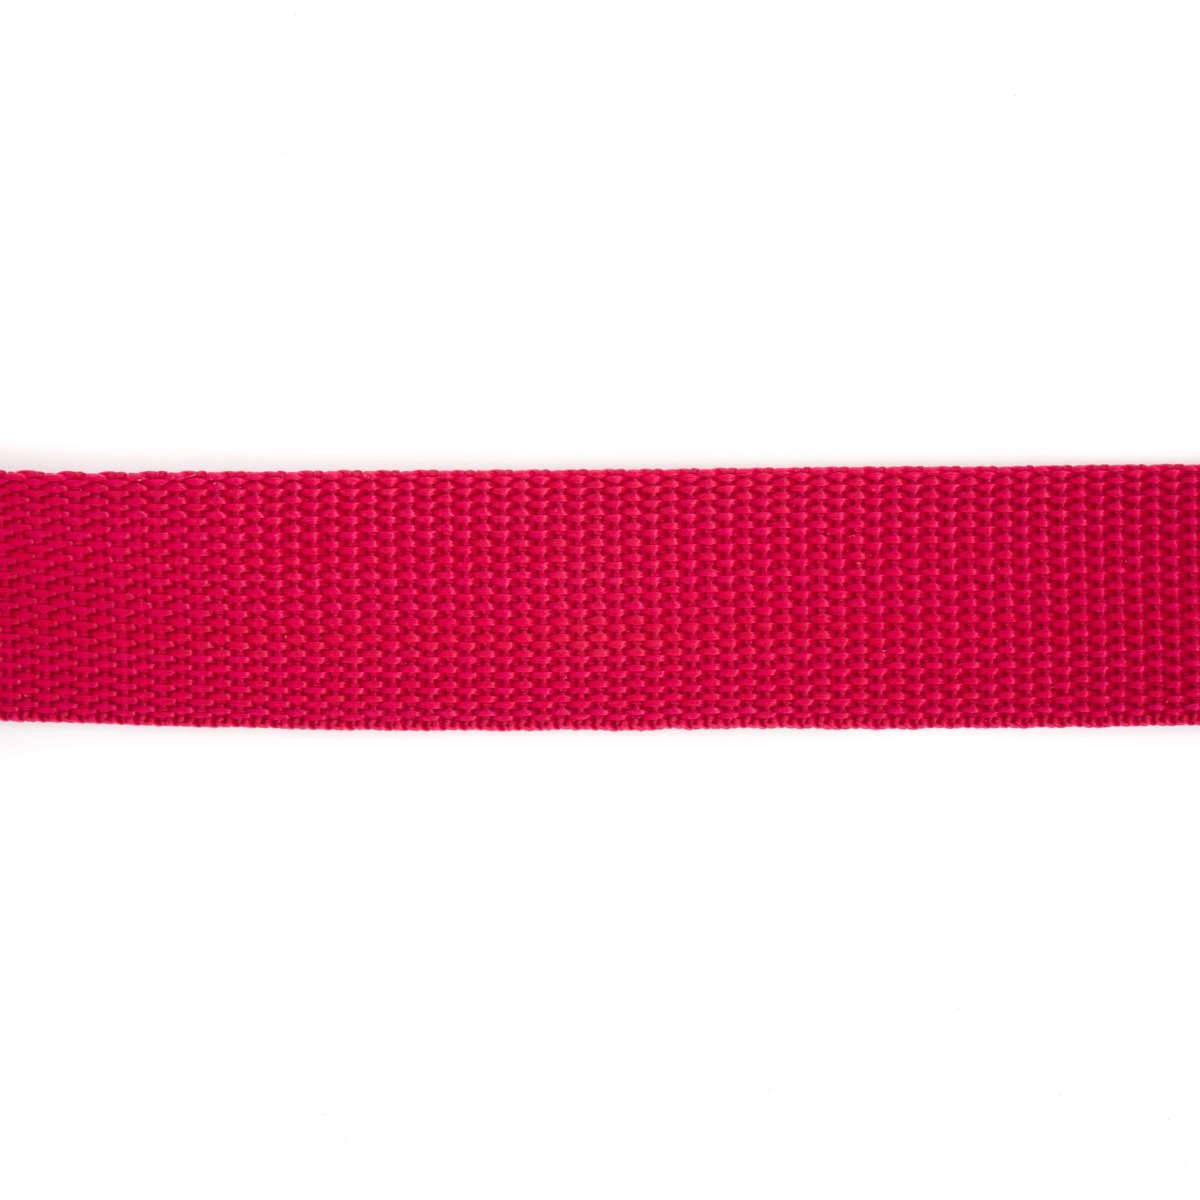 Tassenband | Nylon | 30 mm - donker rood Tassenband TASSENBAND-NYLON-30-DONKER ROOD